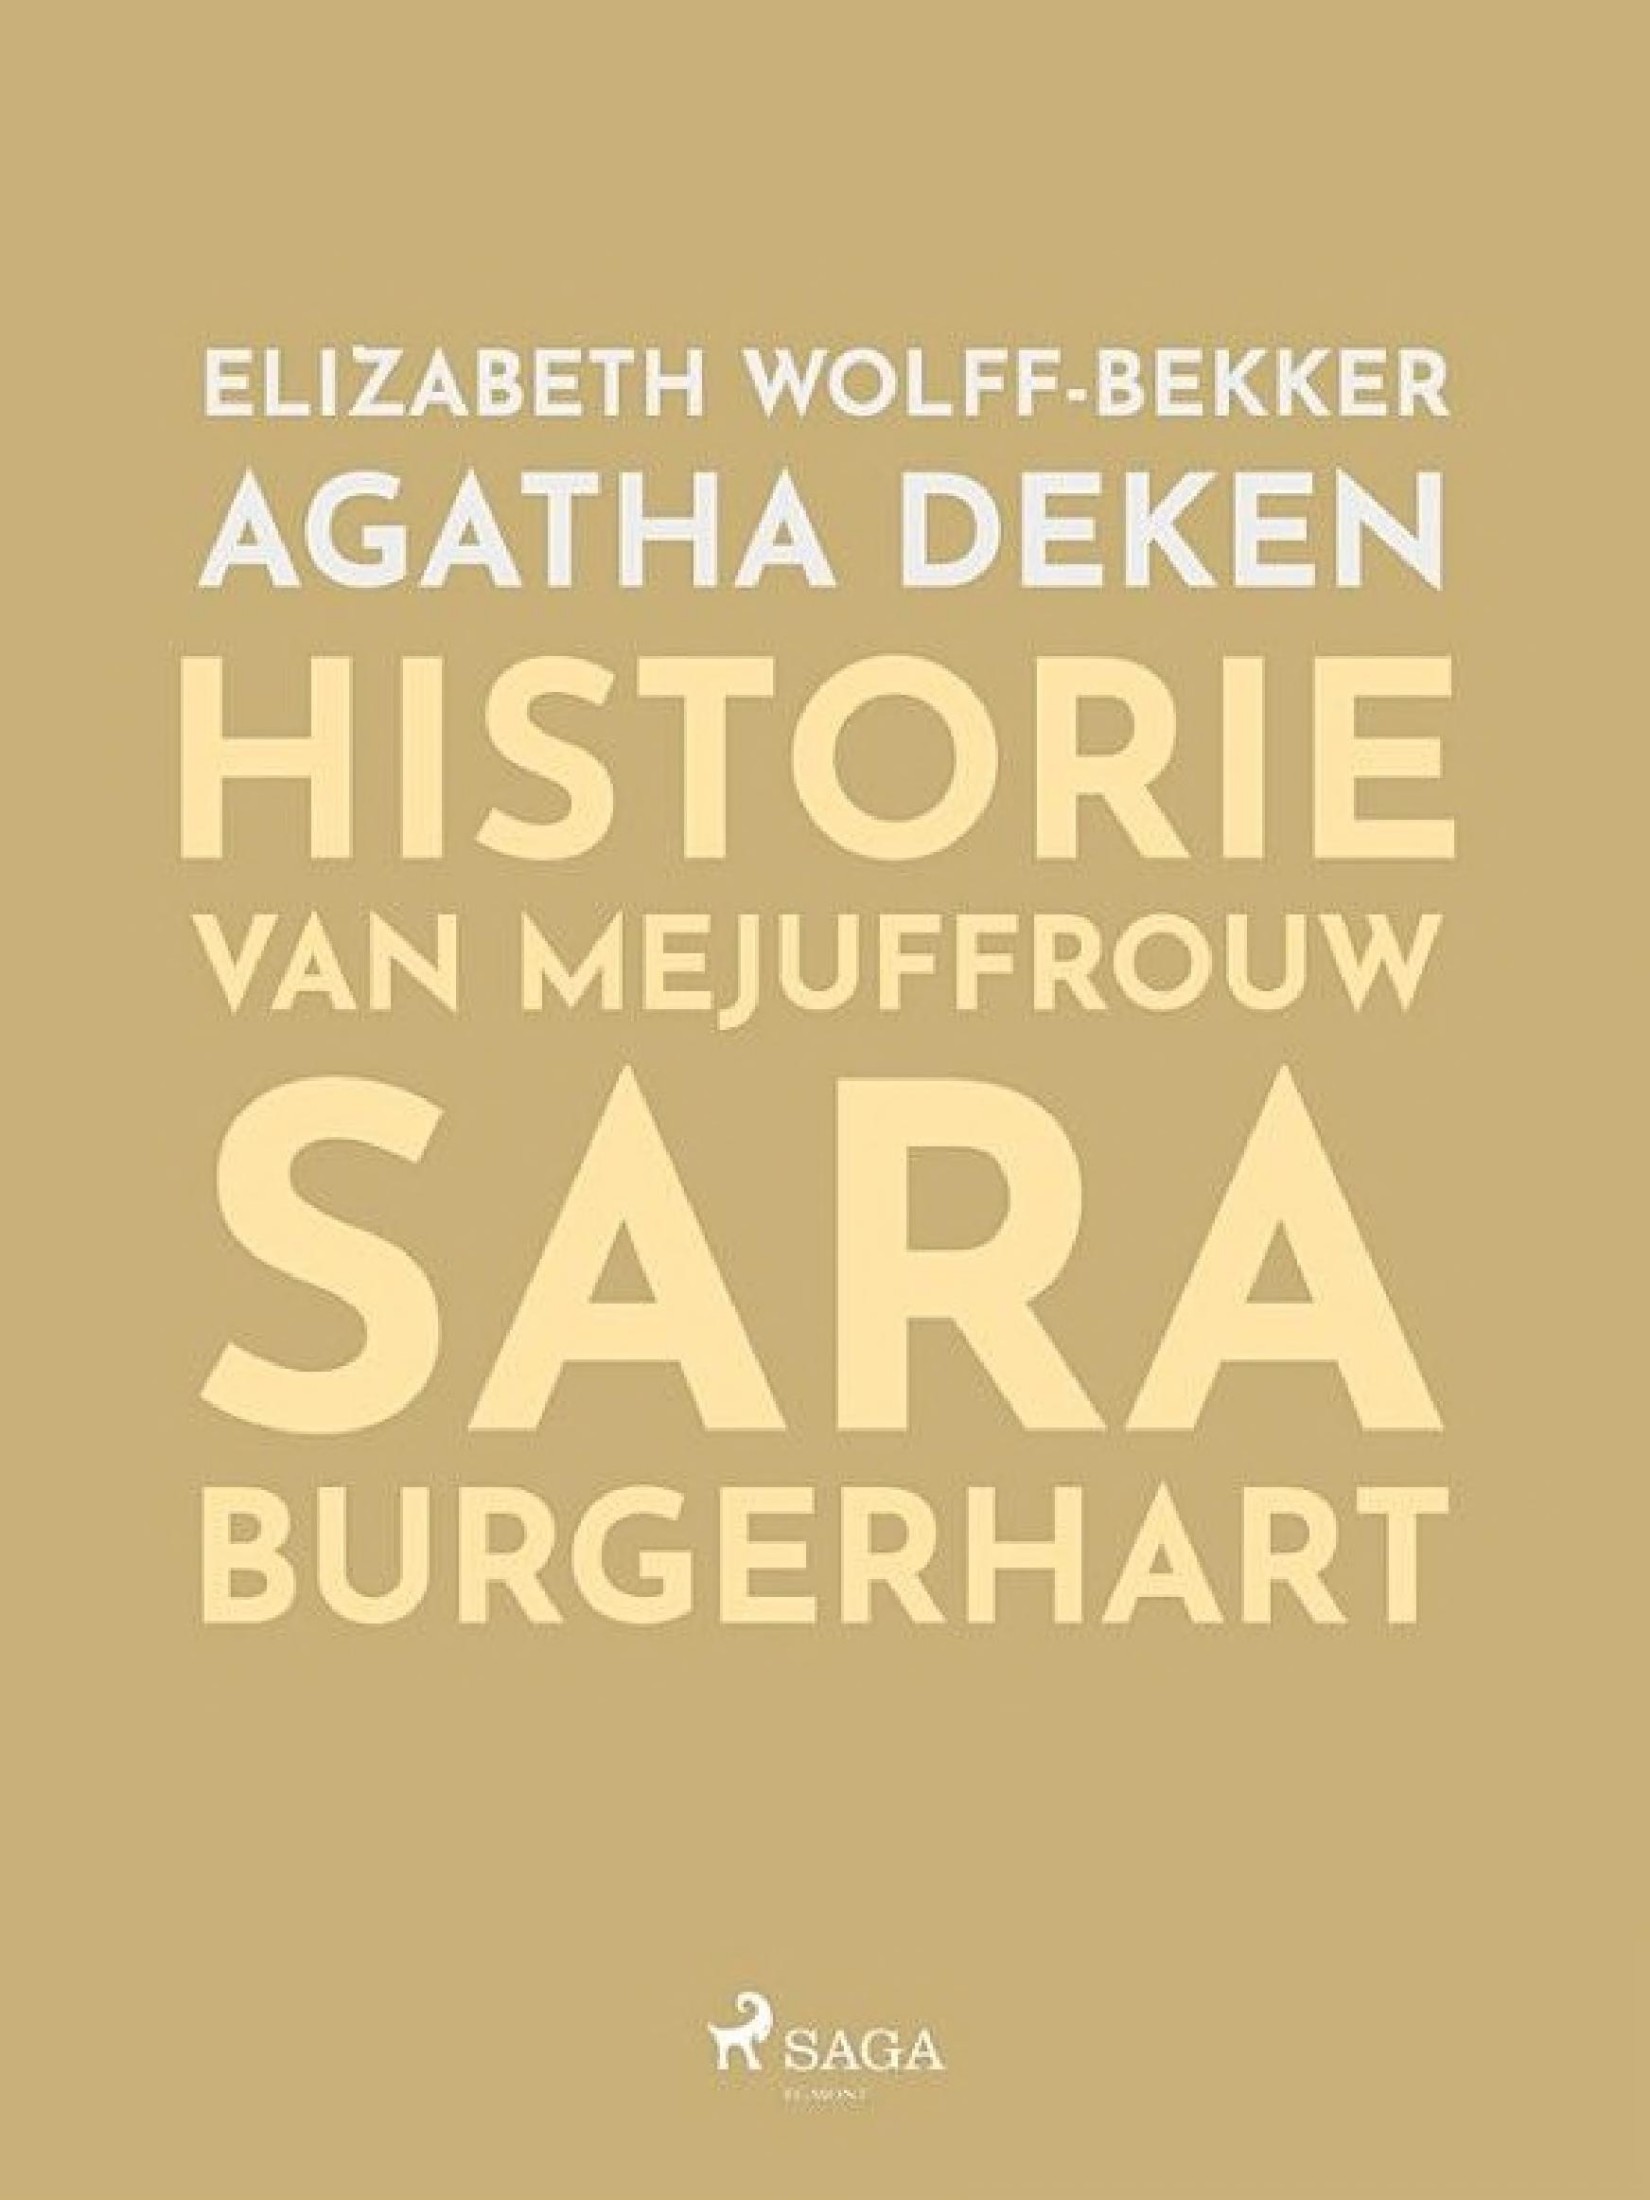 Historie van Mejuffrouw Sara Burgerhart